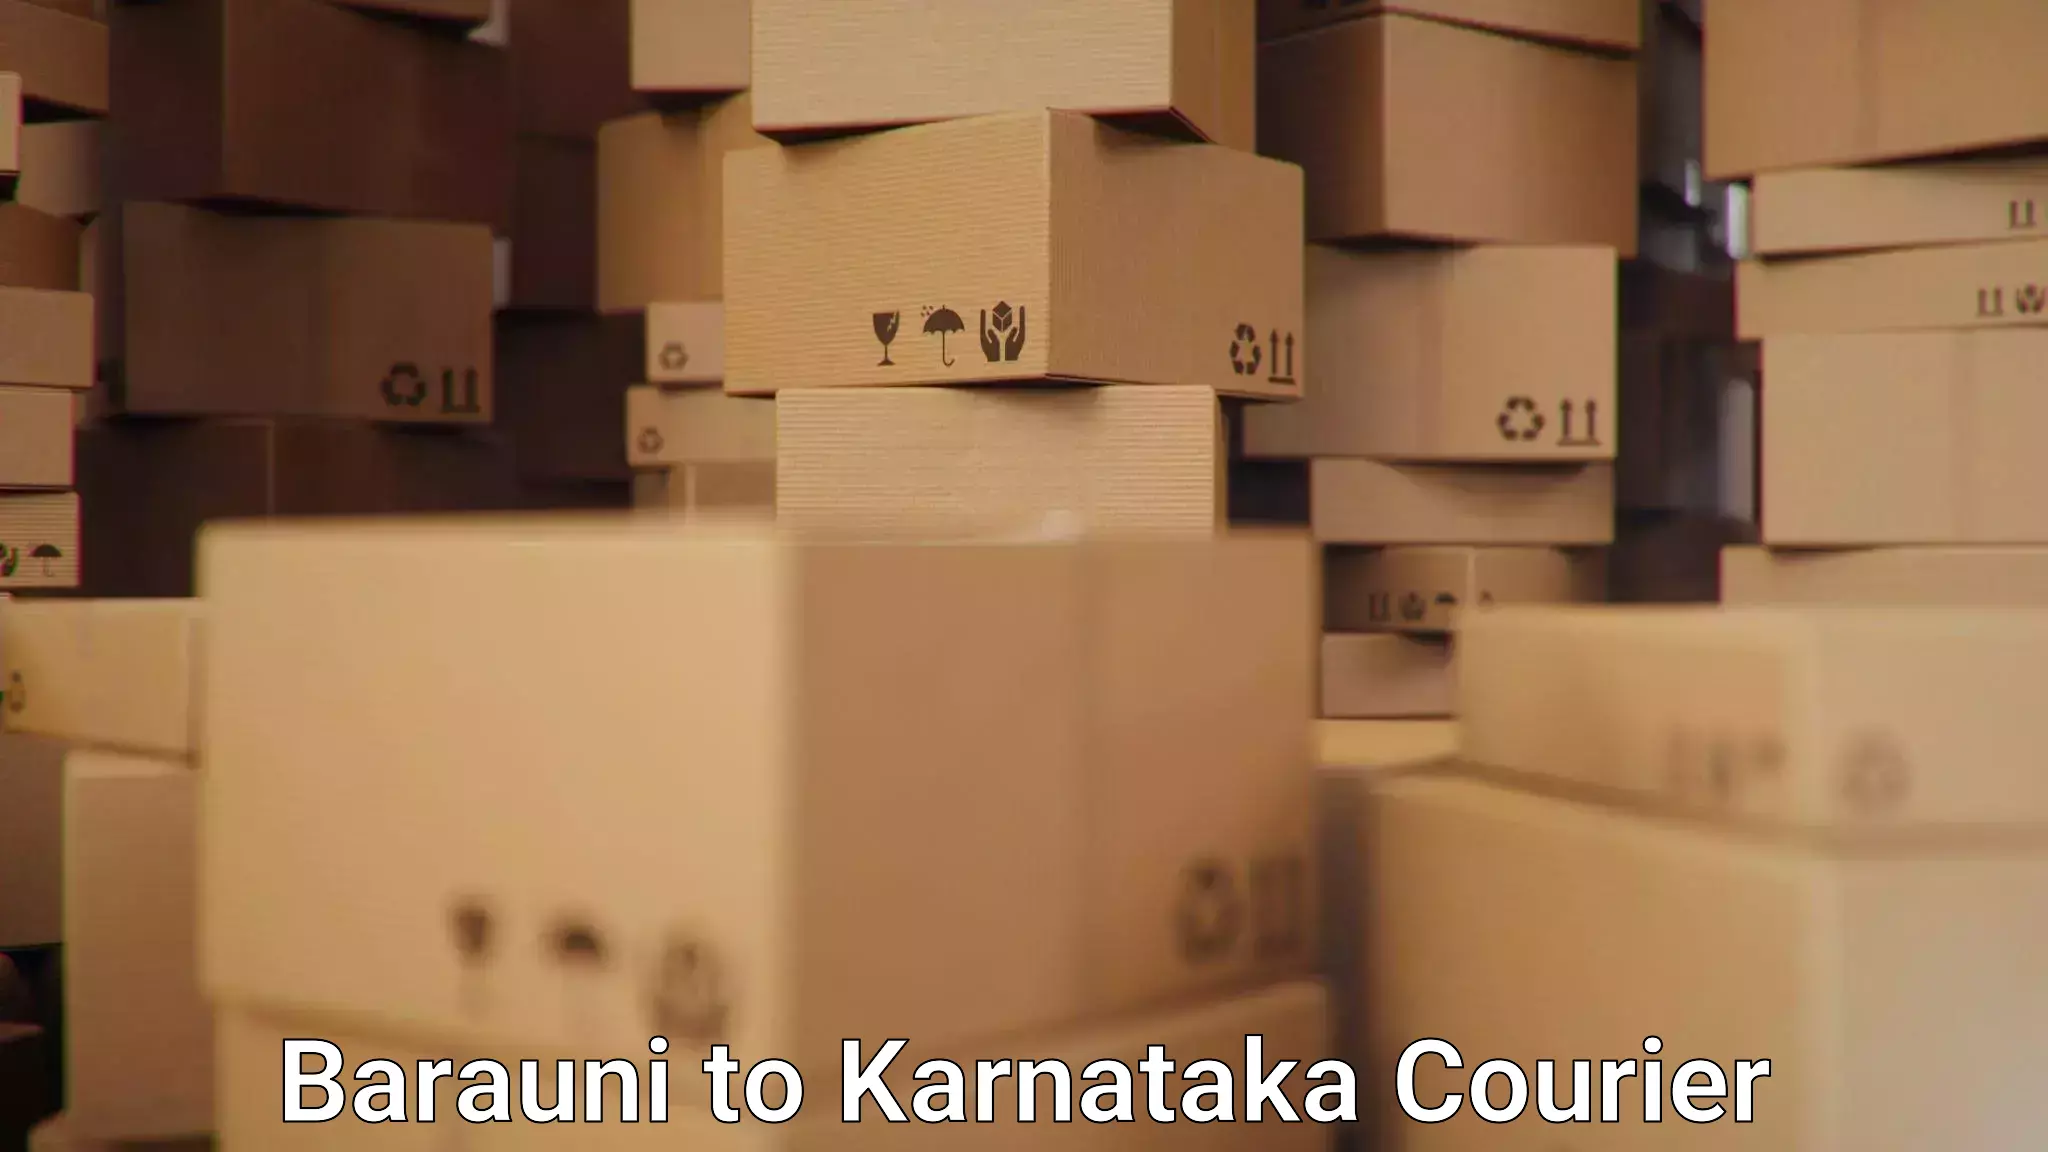 Modern courier technology Barauni to Karnataka